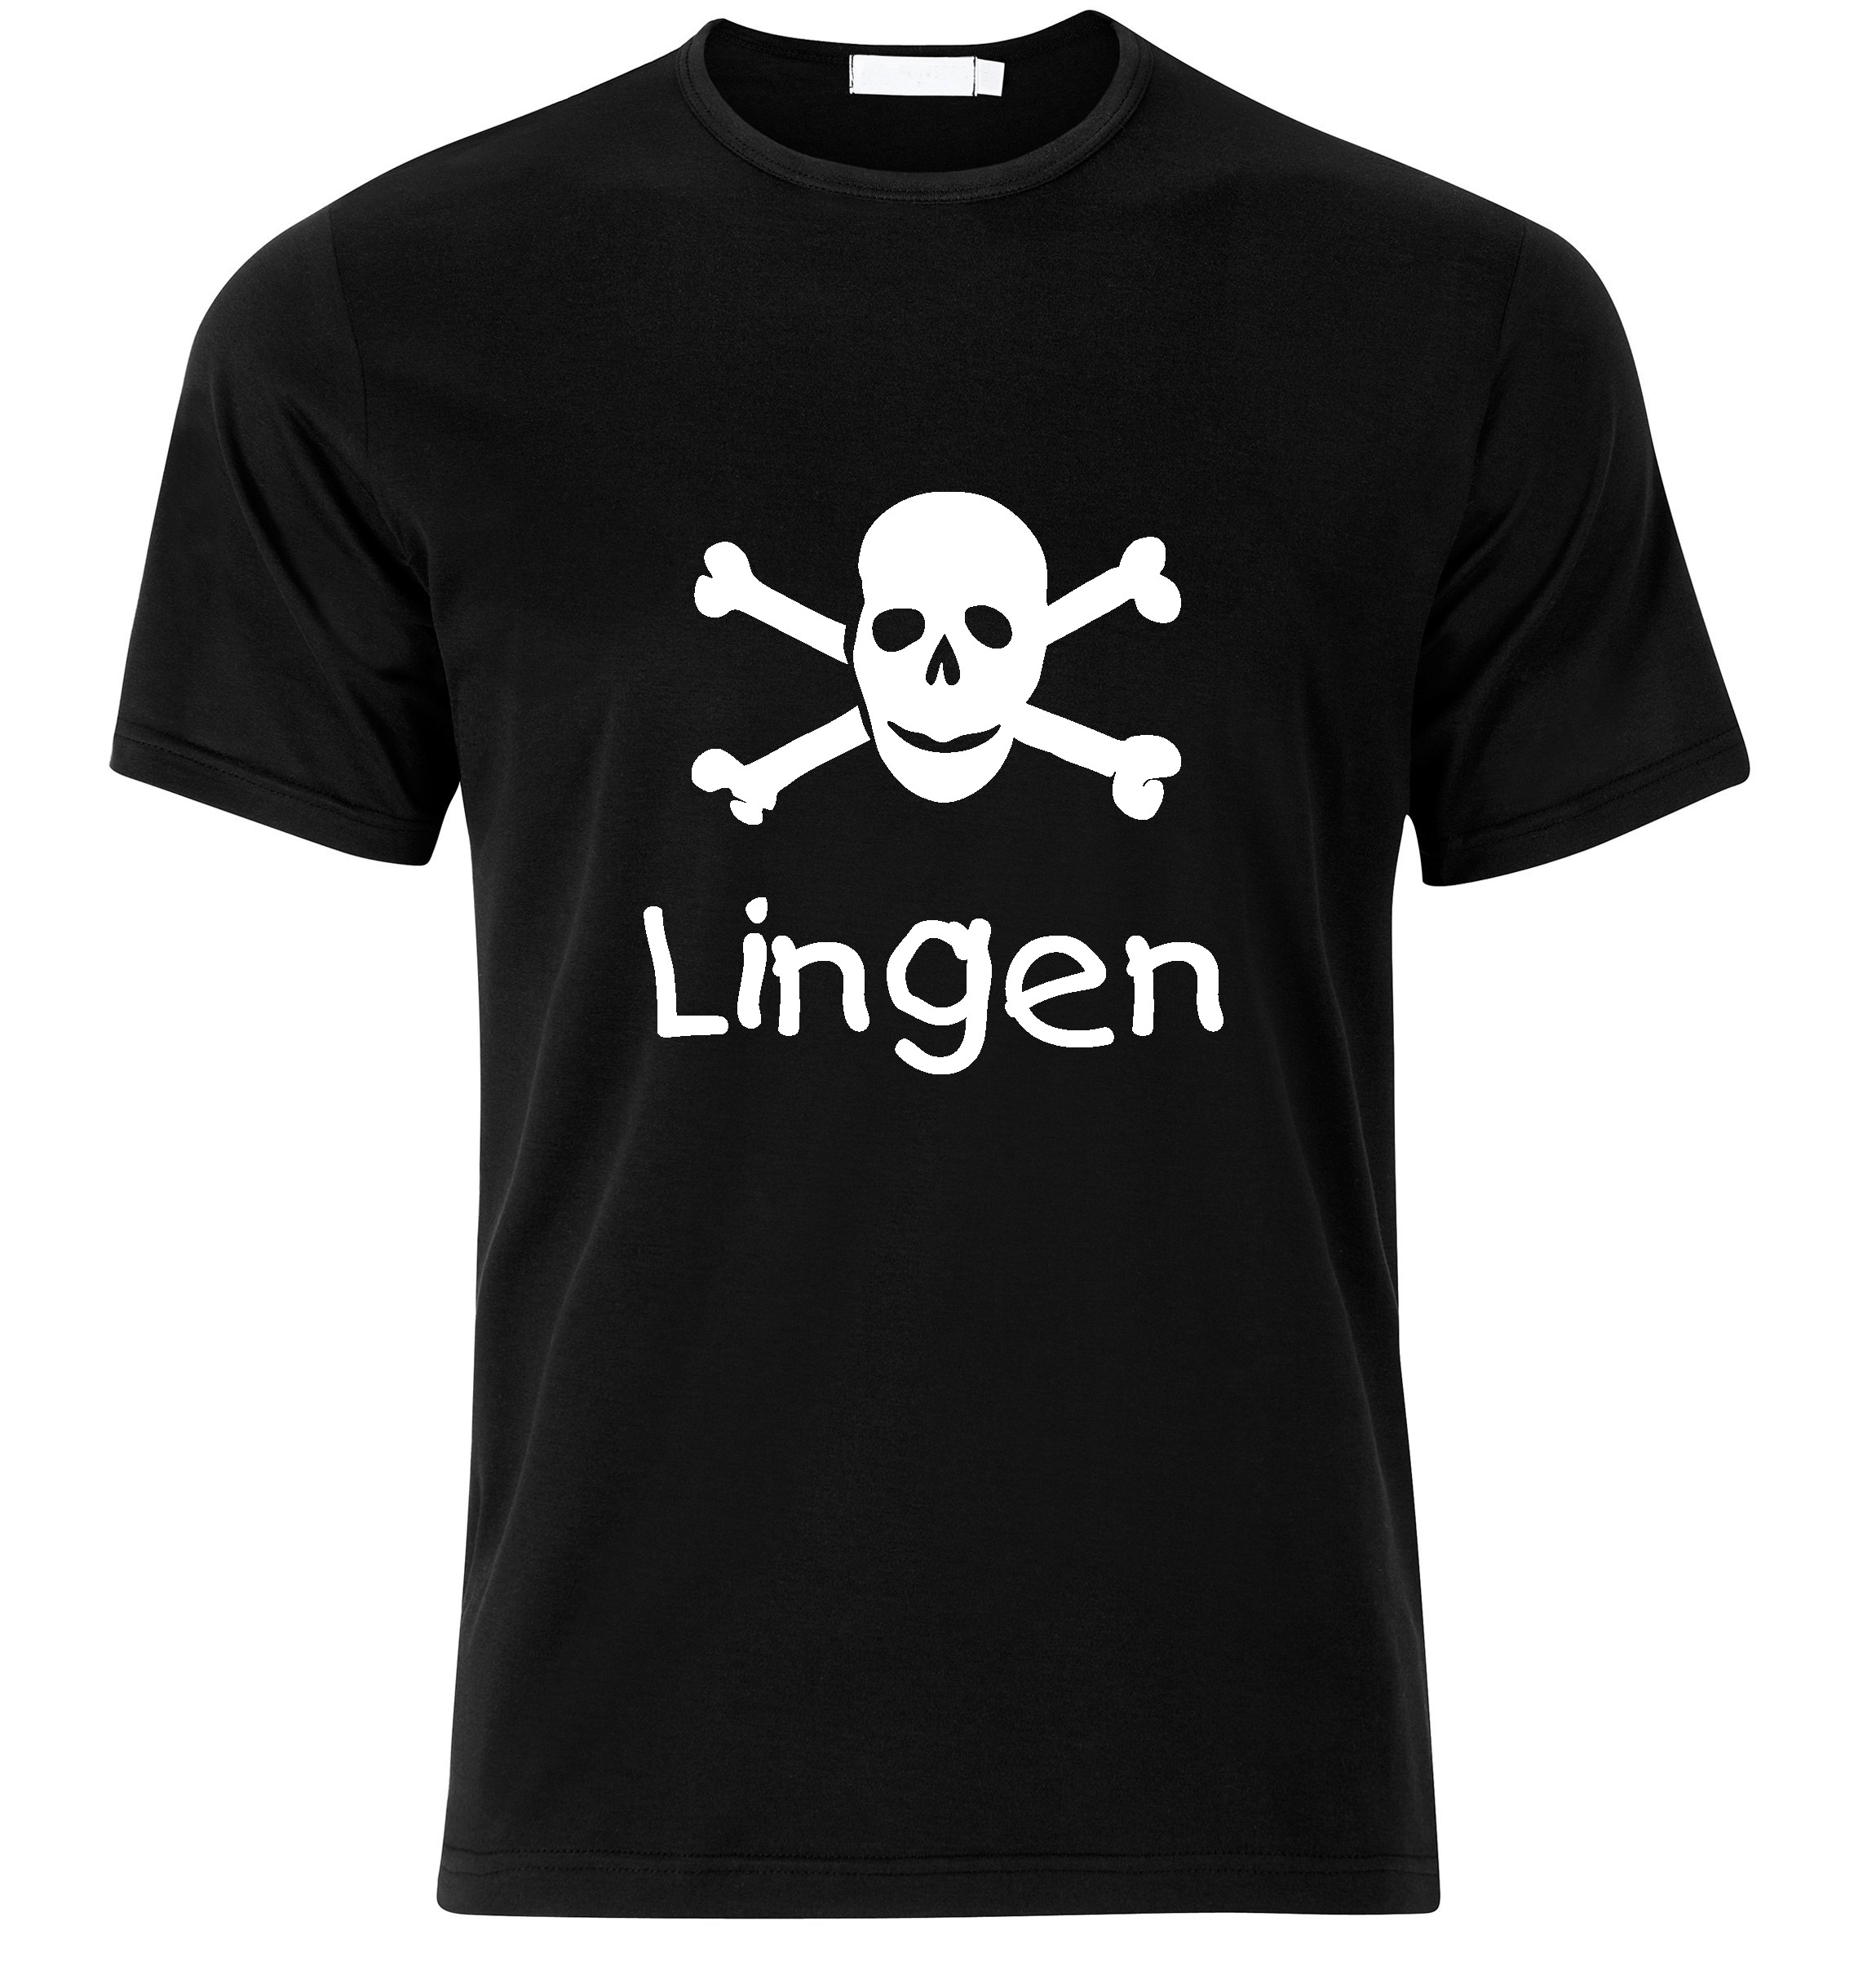 T-Shirt Lingen Jolly Roger, Totenkopf